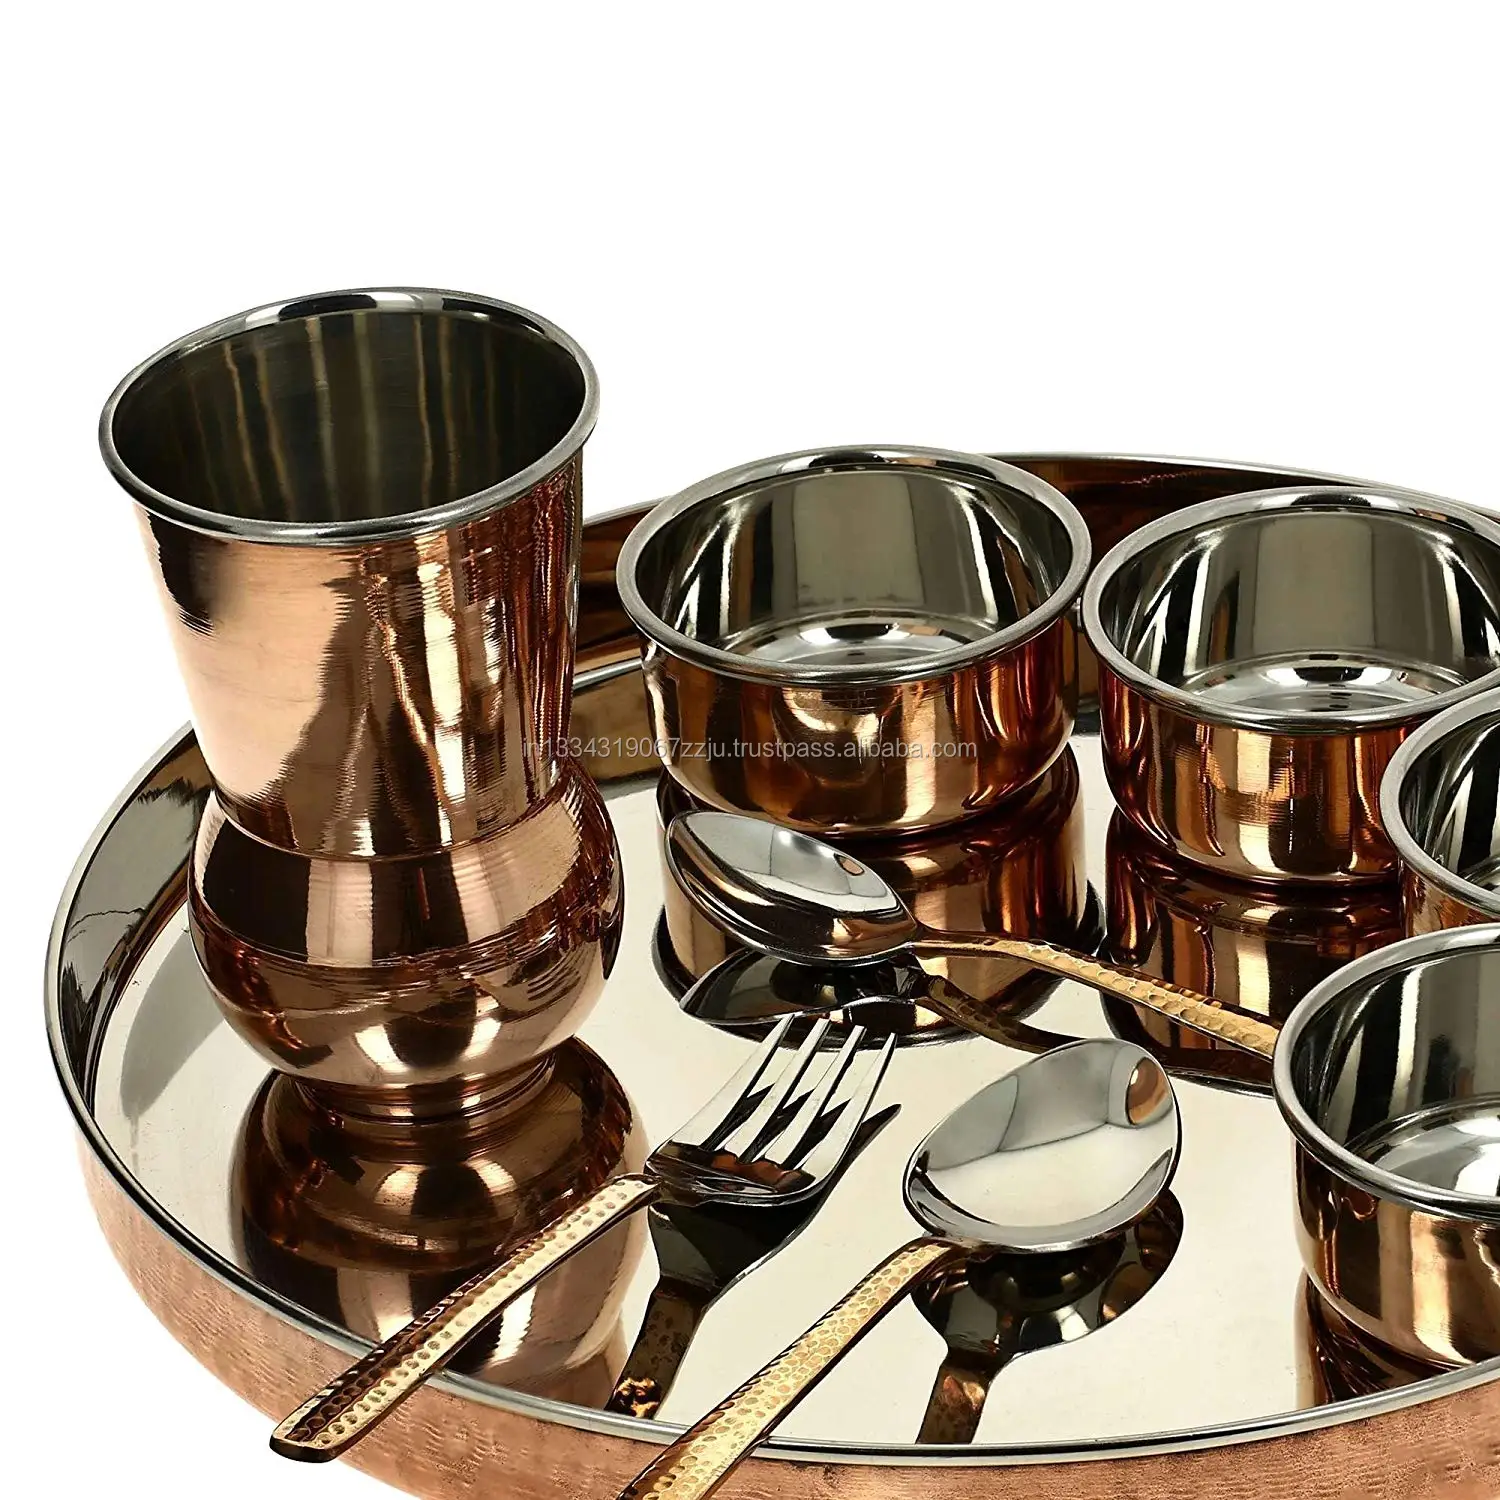 Металлическая посуда купить. Металлическая посуда. Посуда железная индийская. Шведская посуда металлическая. Железная посуда для ресторанов.